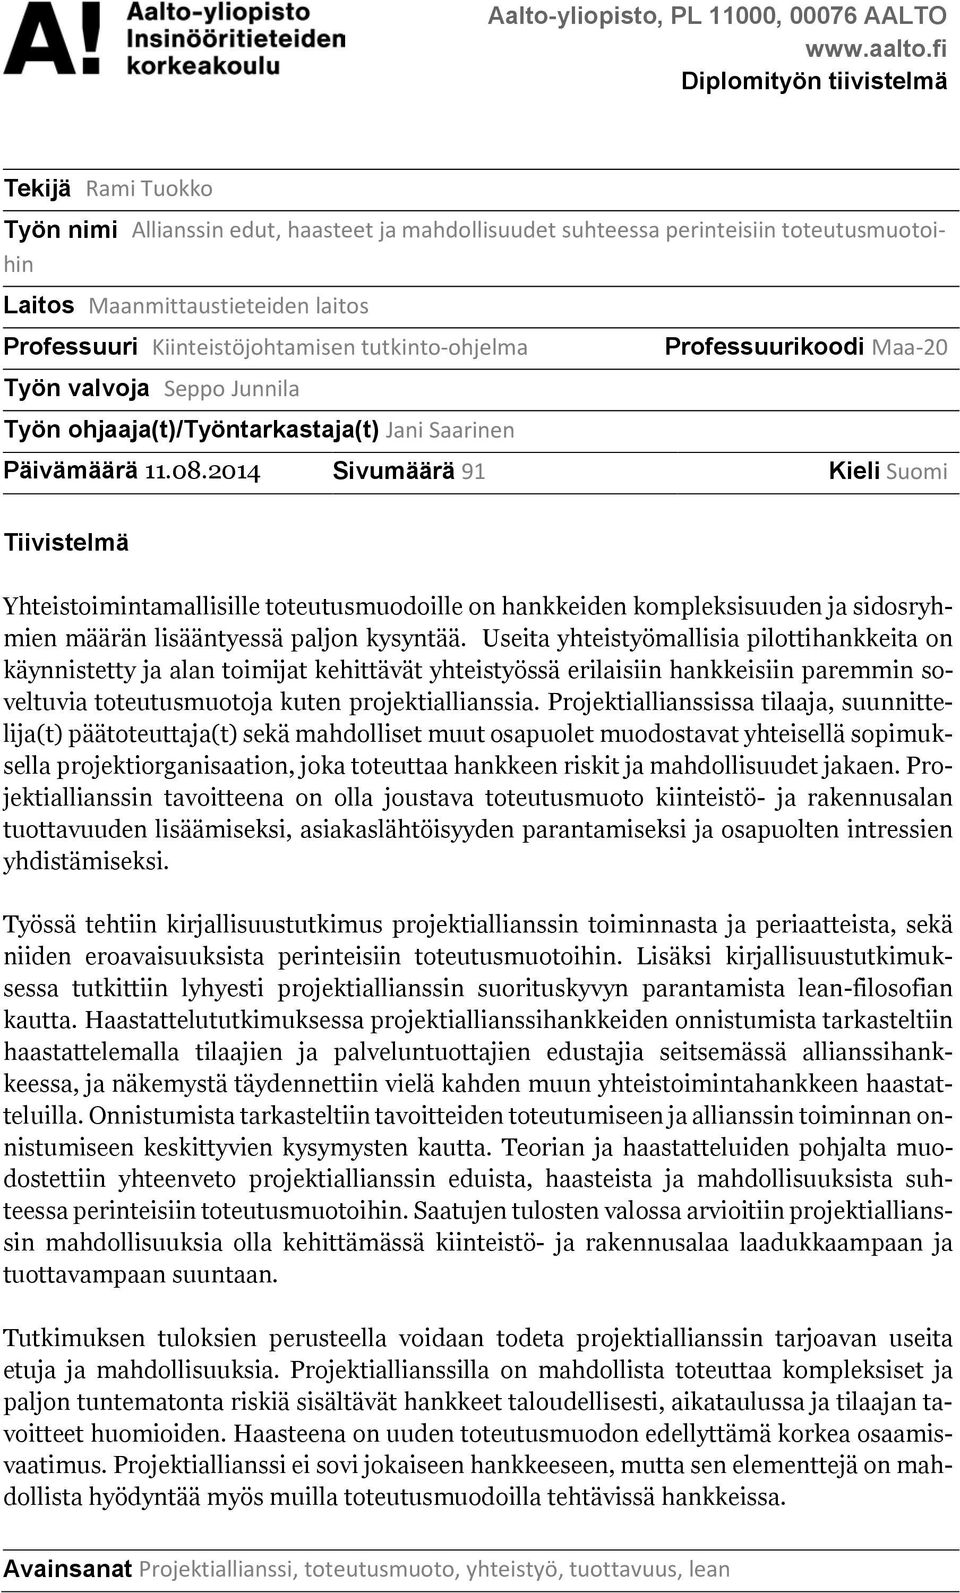 Kiinteistöjohtamisen tutkinto-ohjelma Työn valvoja Seppo Junnila Työn ohjaaja(t)/työntarkastaja(t) Jani Saarinen Professuurikoodi Maa-20 Päivämäärä 11.08.